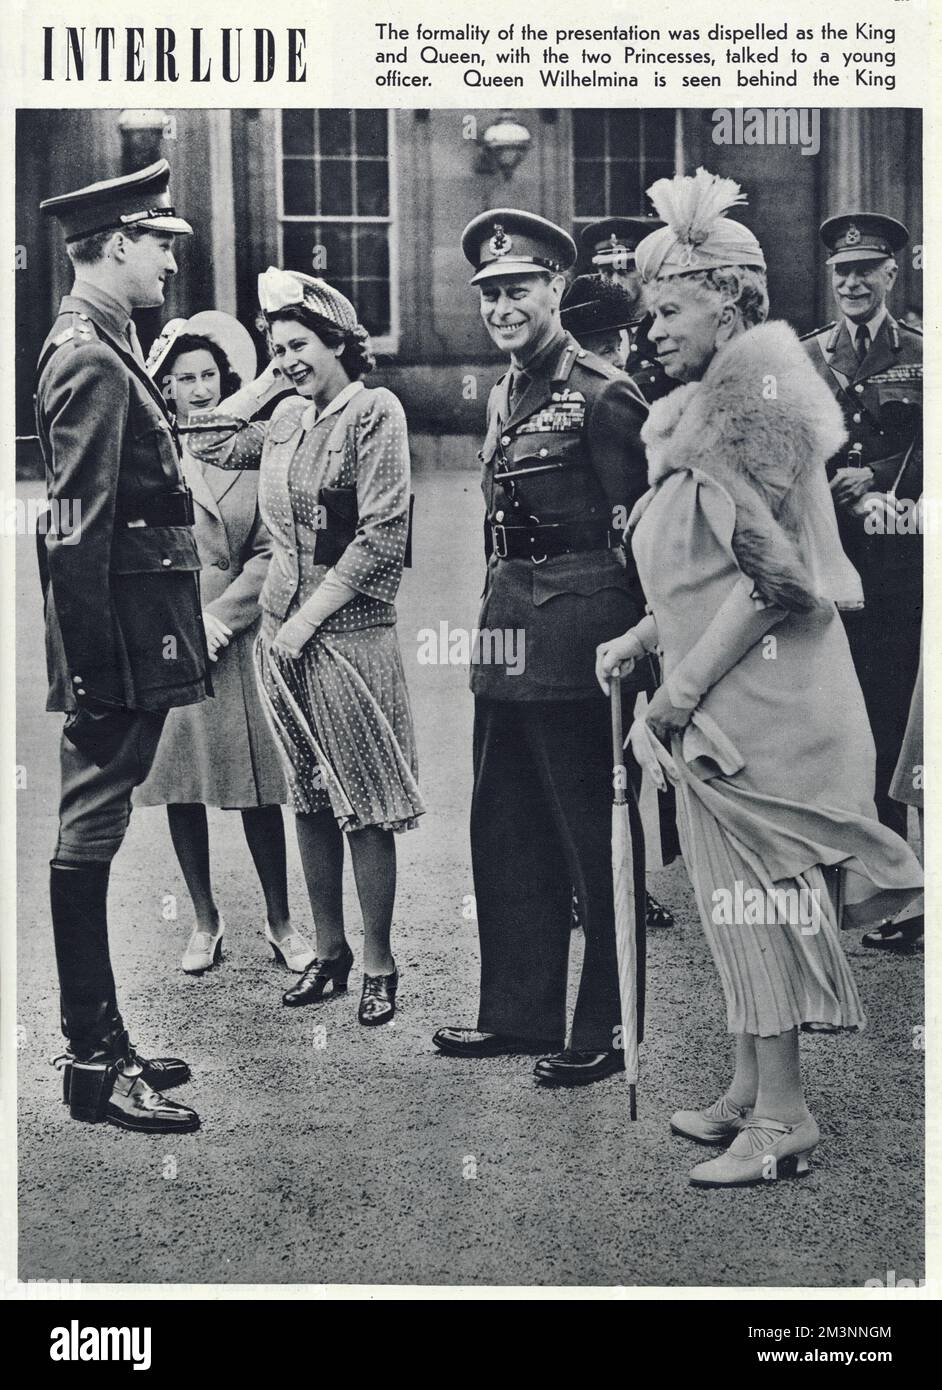 Prinzessin Elizabeth hält ihren Hut fest, und der Rest der königlichen Familie scheint einen Witz zu teilen, während eine formelle Präsentation von 36 Pferden von Königin Wilhelmina von Holland. Von links: Prinzessin Margaret, Prinzessin Elizabeth (Königin Elizabeth II), König George VI., Königin Wilhelmina (gerade hinter dem König gesehen) und Königin Mary. Datum: 1946 Stockfoto